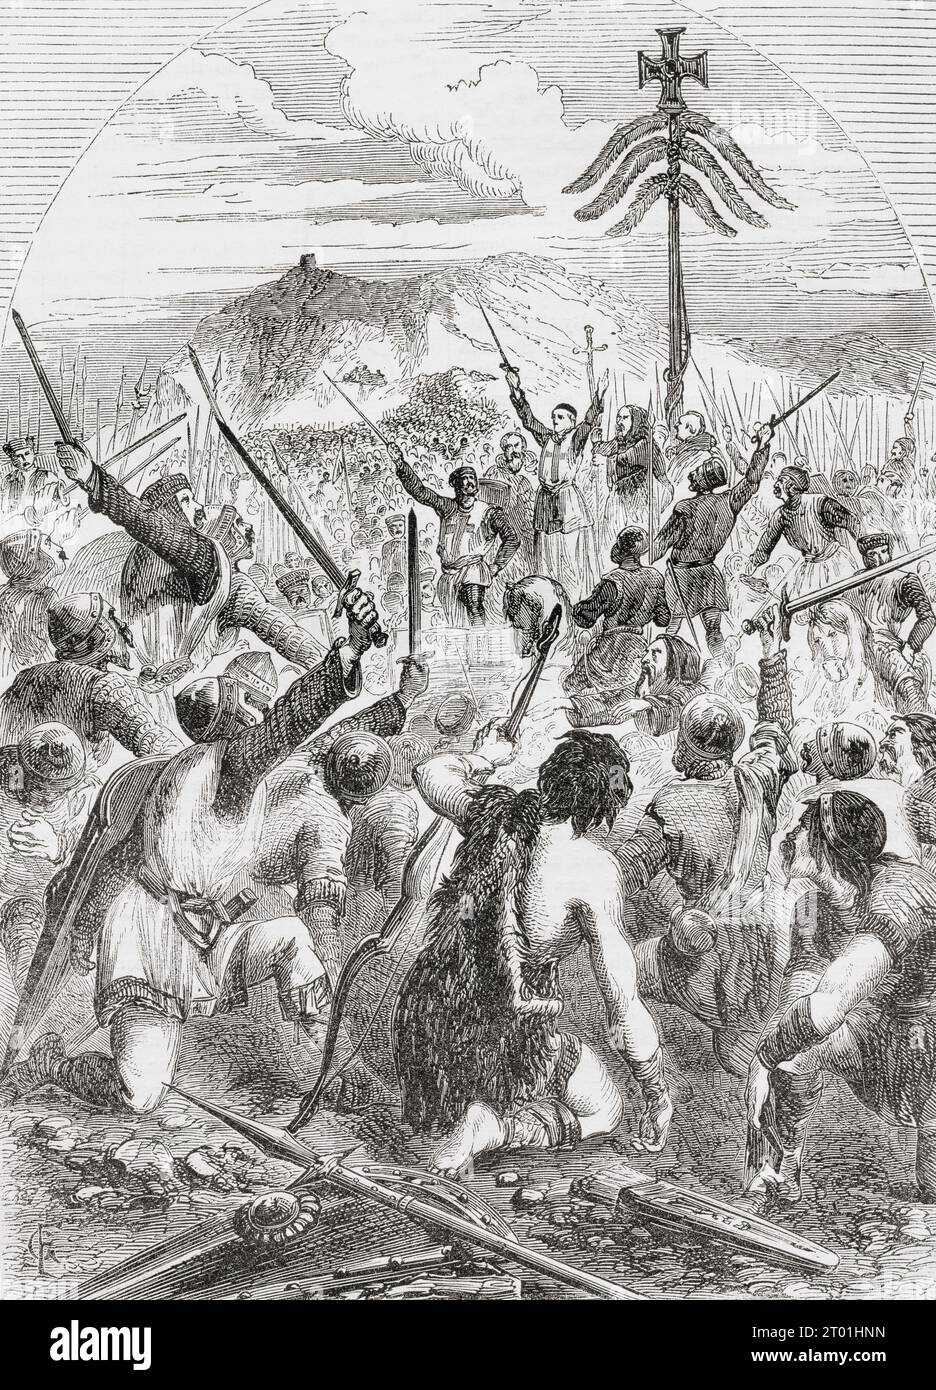 La battaglia dello Standard, nota anche come battaglia di Northallerton, 22 agosto 1138. Da Cassell's Illustrated History of England, pubblicato nel 1857. Foto Stock